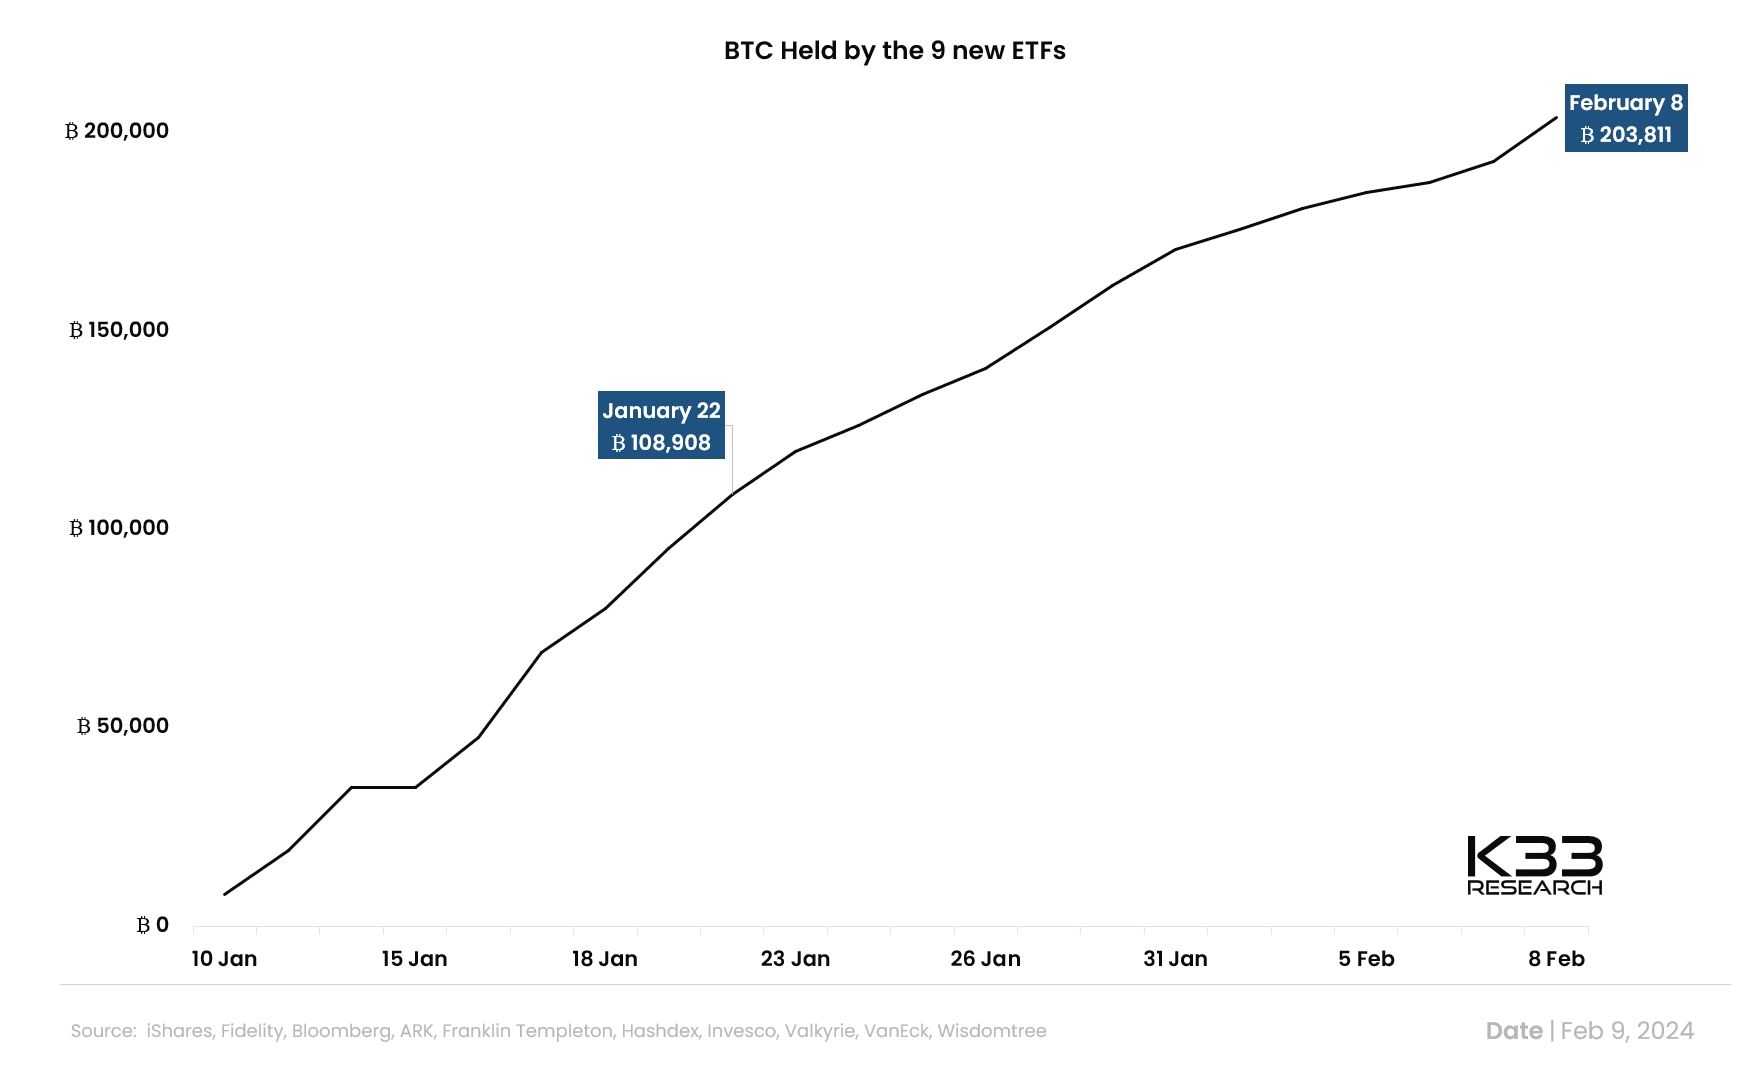 9 quỹ Spot Bitcoin ETF tích luỹ được 200K BTC trong chưa đầy một tháng - Tin Tức Bitcoin 2024